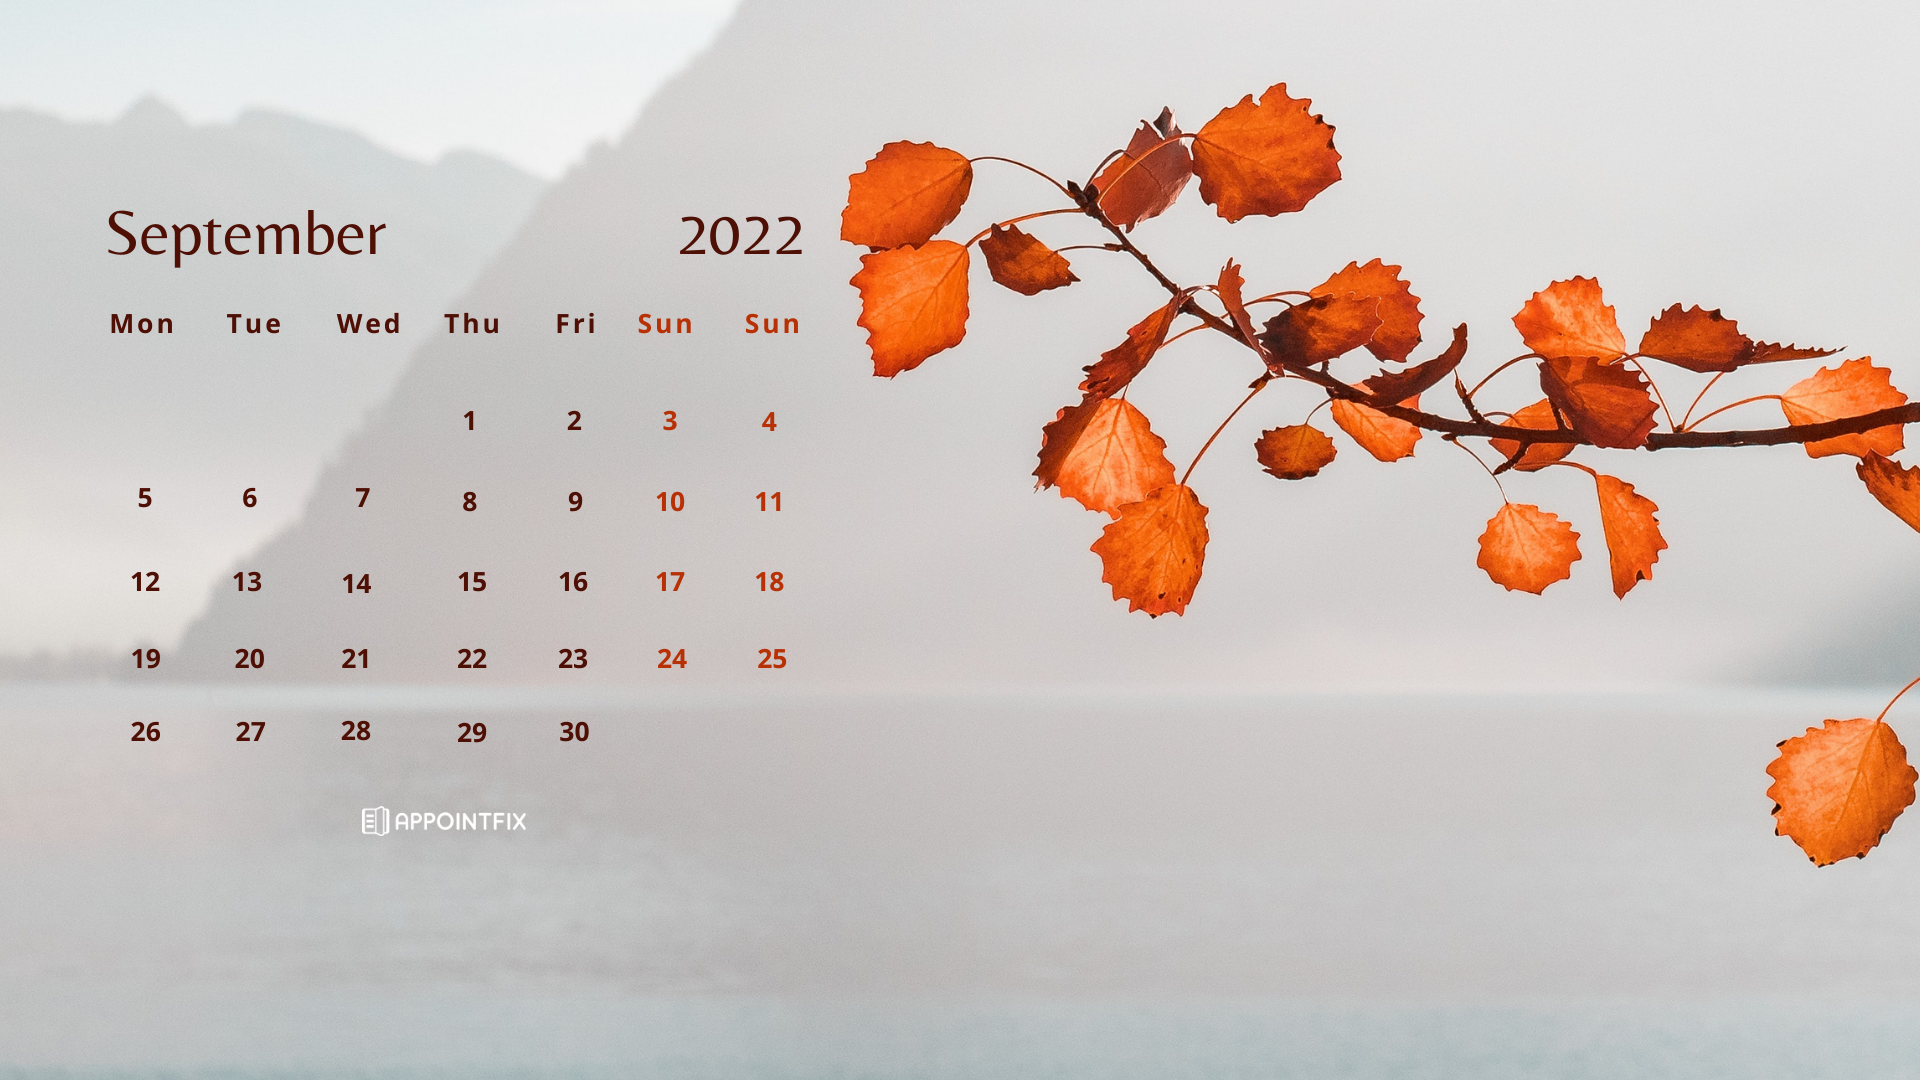 Hình nền lịch tháng 9 năm 2022 đang được cập nhật miễn phí trên trang web. Hãy tải về ngay để có những bức hình đẹp và thú vị trên máy tính và điện thoại di động của mình. Đừng quên khám phá những hình nền phù hợp với phong cách cá nhân của bạn. 